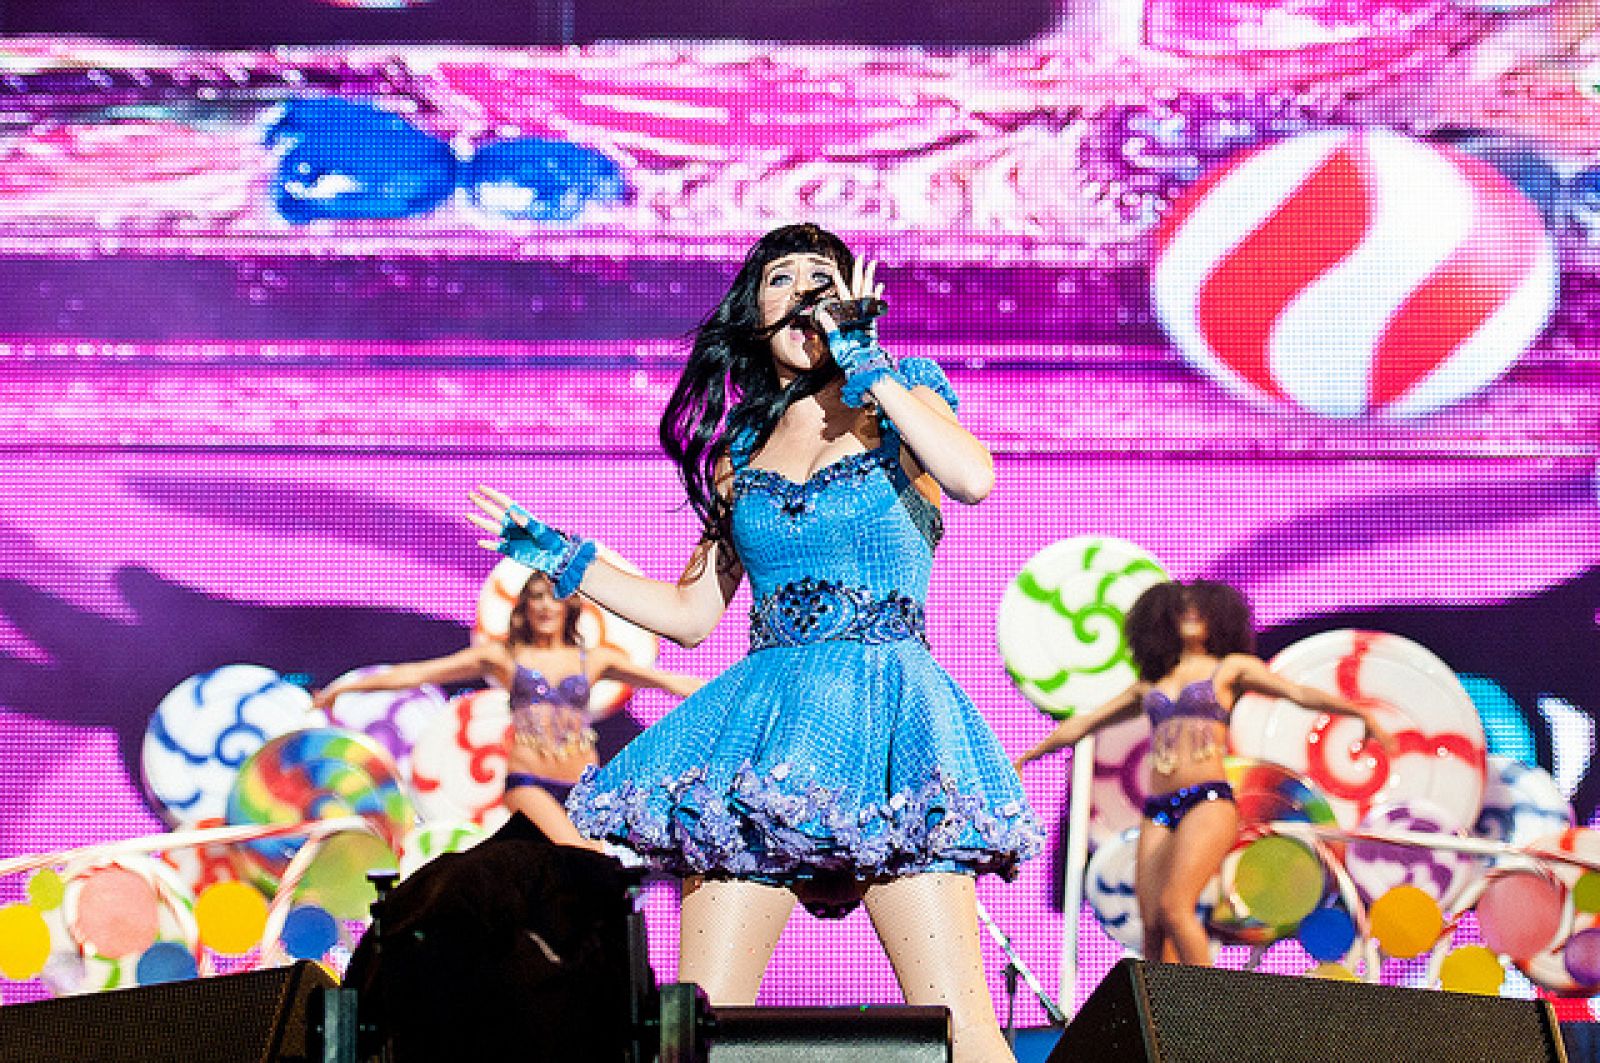 El colorido de Katy Perry inundó el escenario Mundo